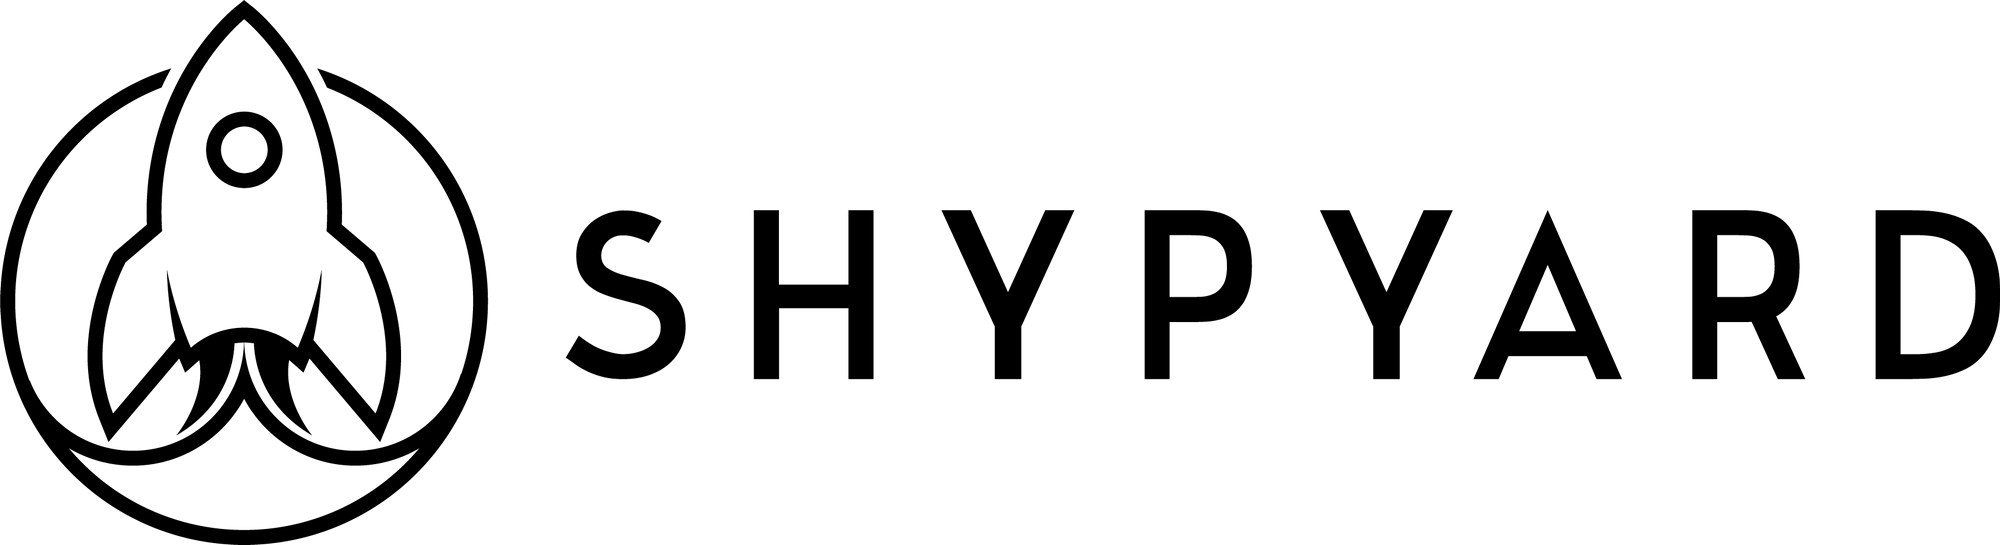 61b136c2651476b4d82bc71a_Shypyard Logo-p-2000.png